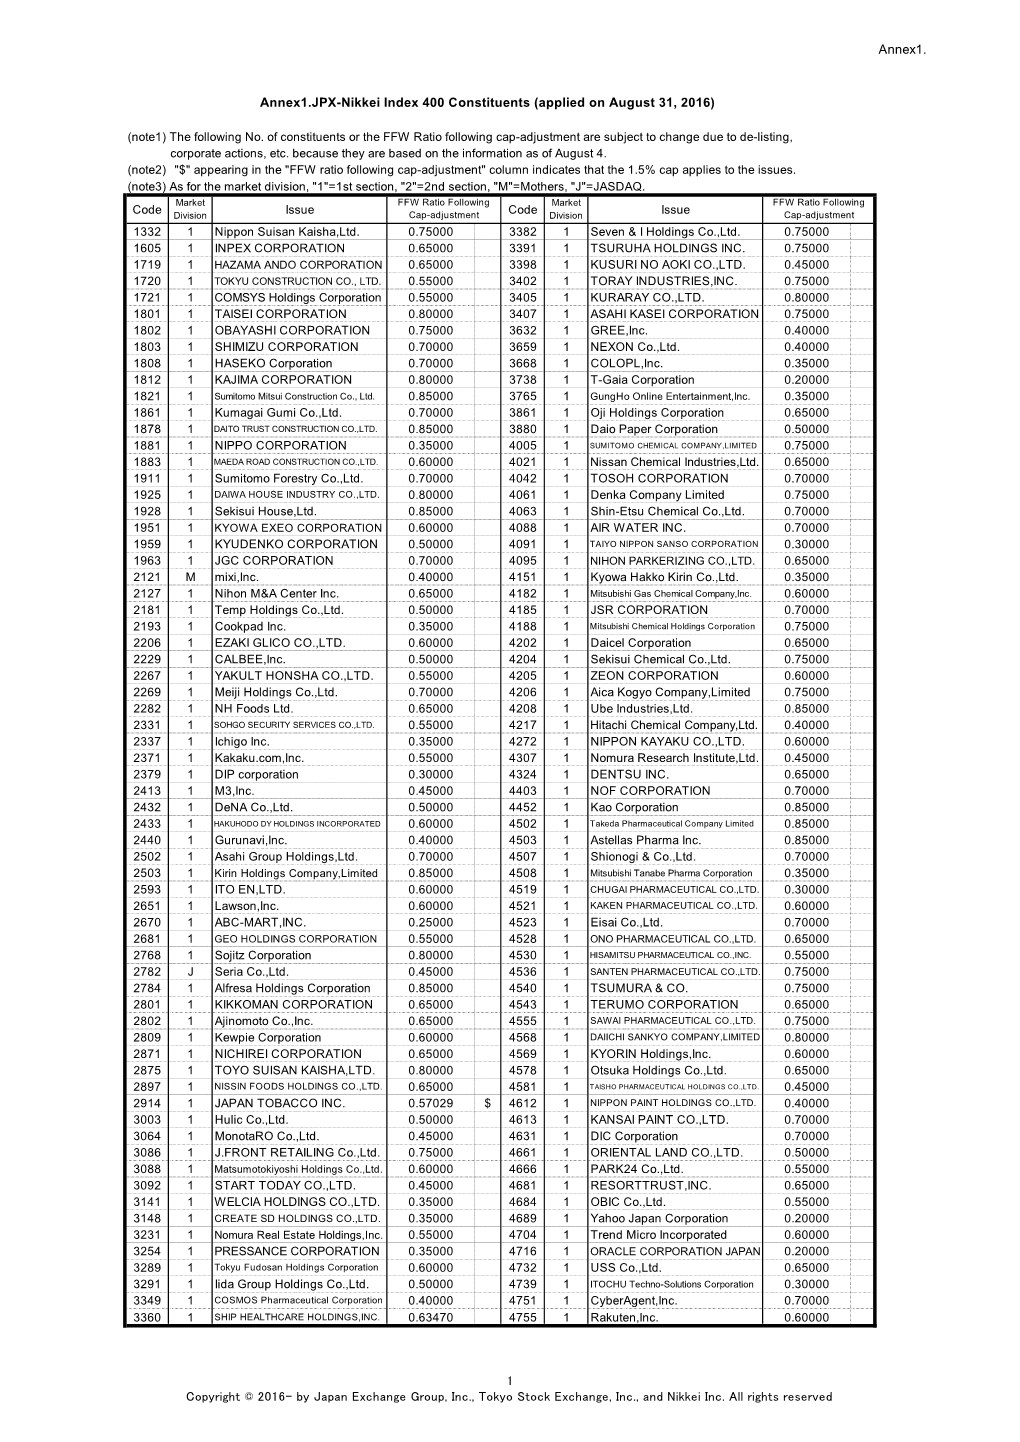 Annex1. Annex1.JPX-Nikkei Index 400 Constituents (Applied On